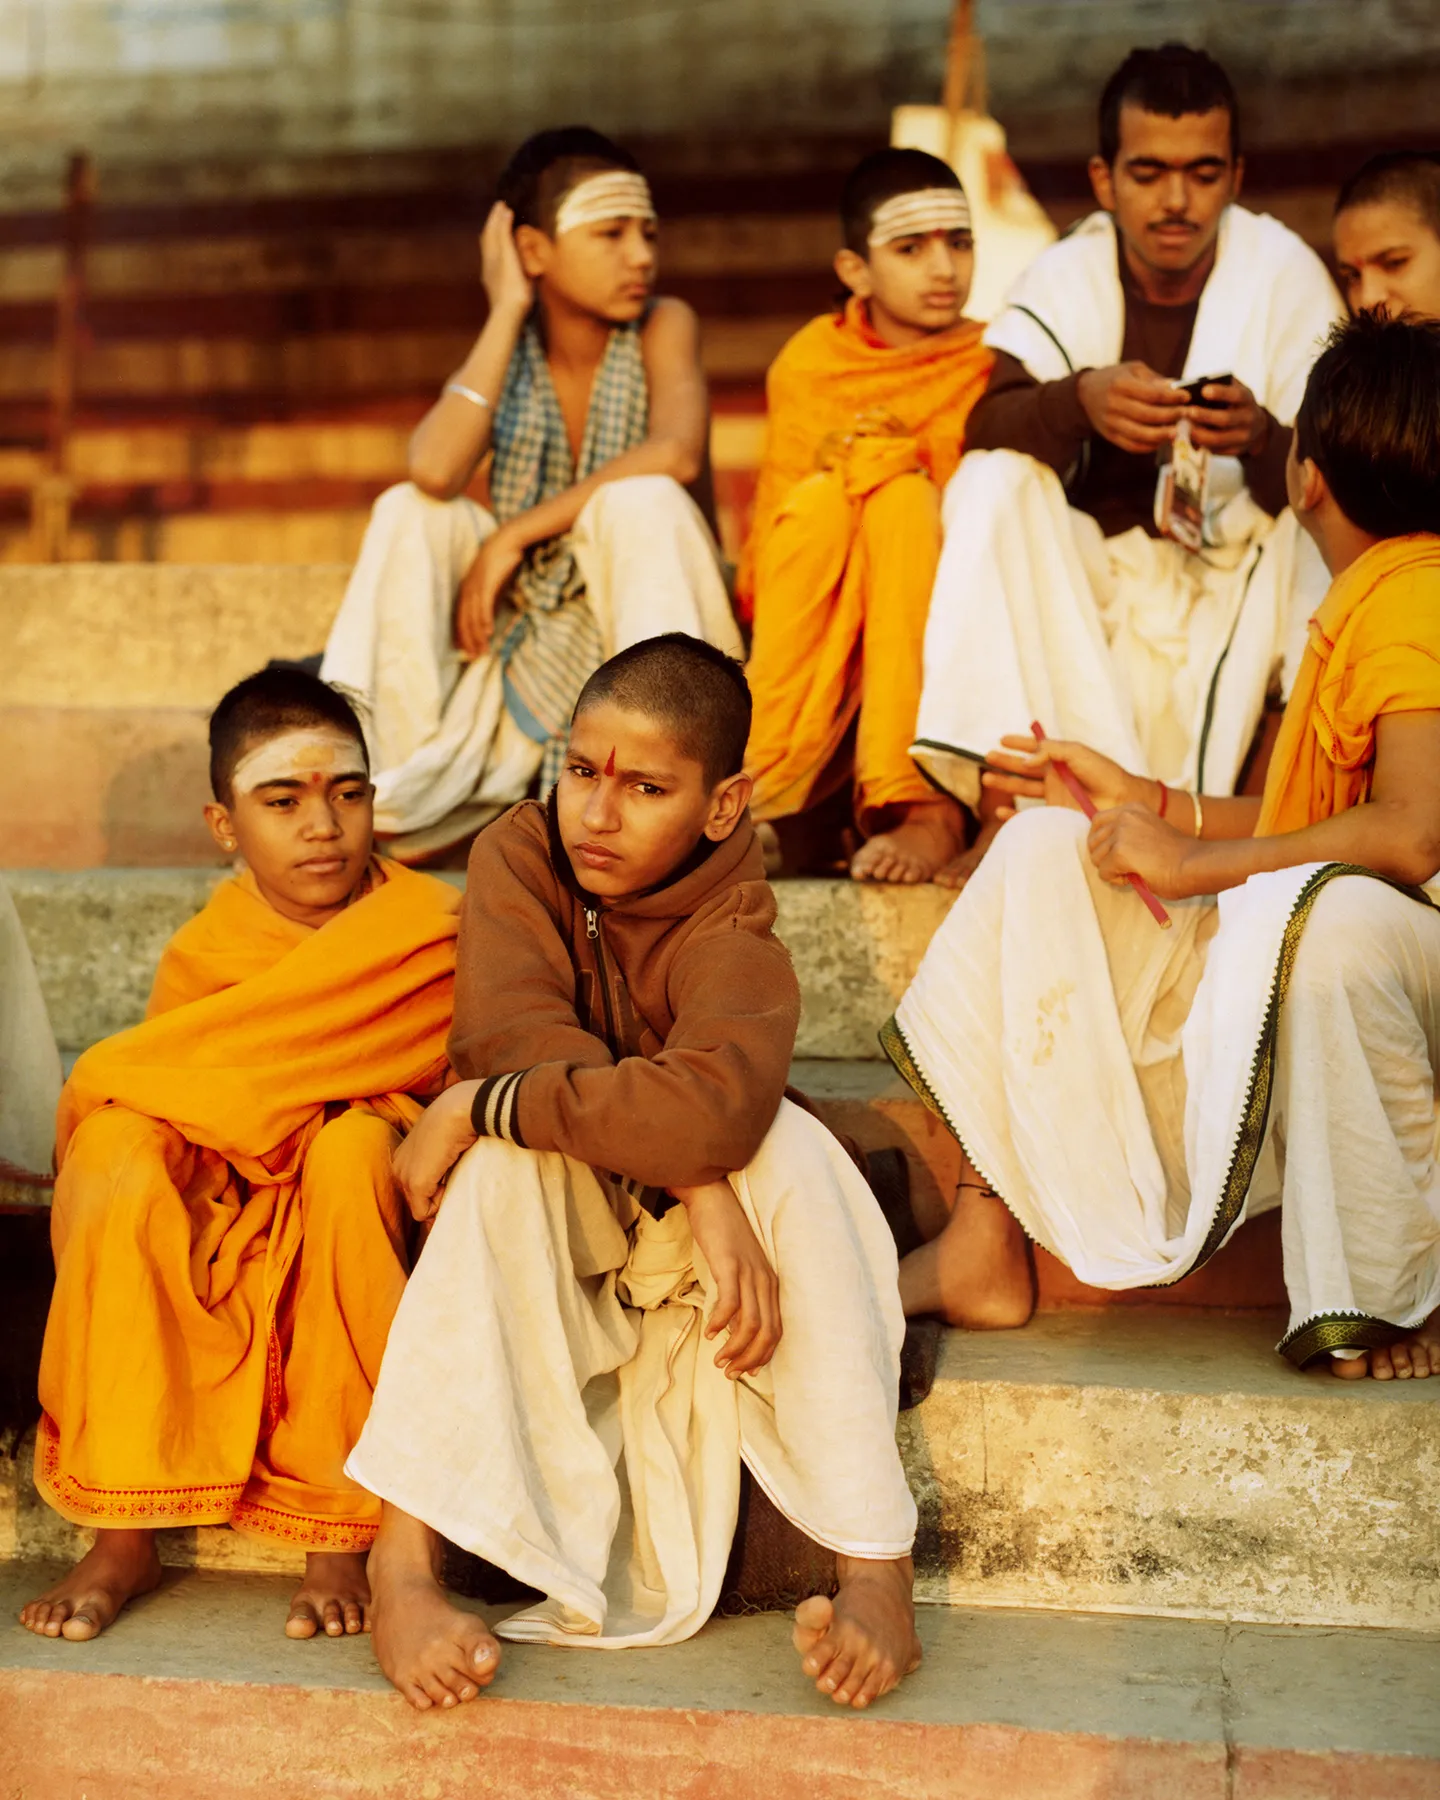 一个摄影师记录了印度各地宗教仪式的多样性一种特殊的视觉感受